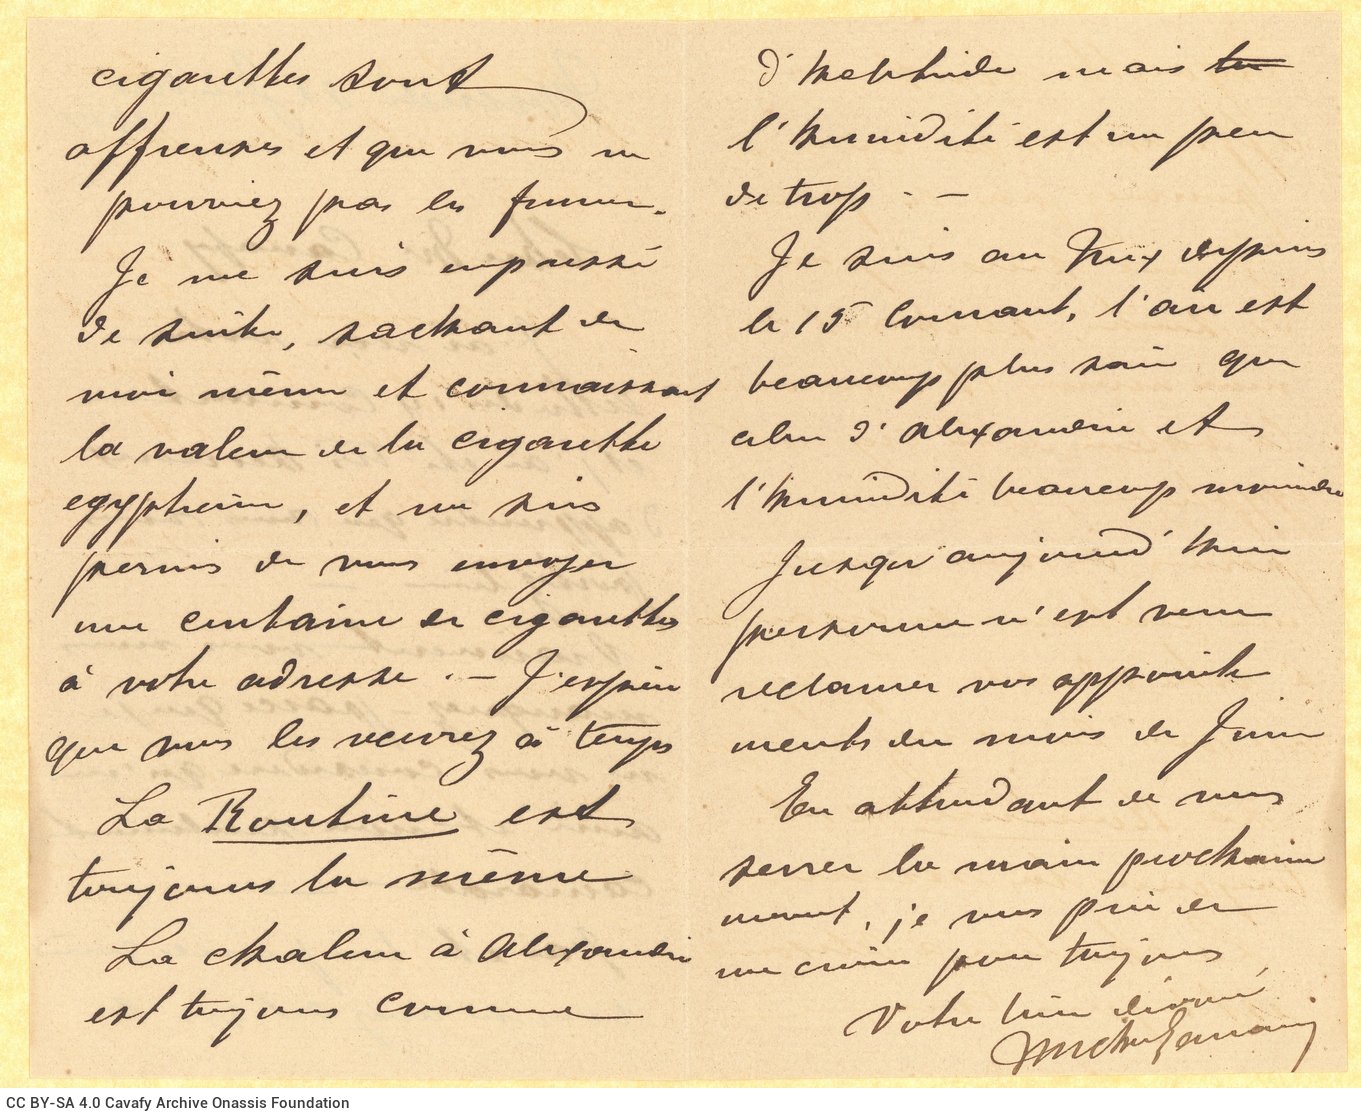 Χειρόγραφη επιστολή αταύτιστου συντάκτη («Michel») προς τον Καβάφη στι�